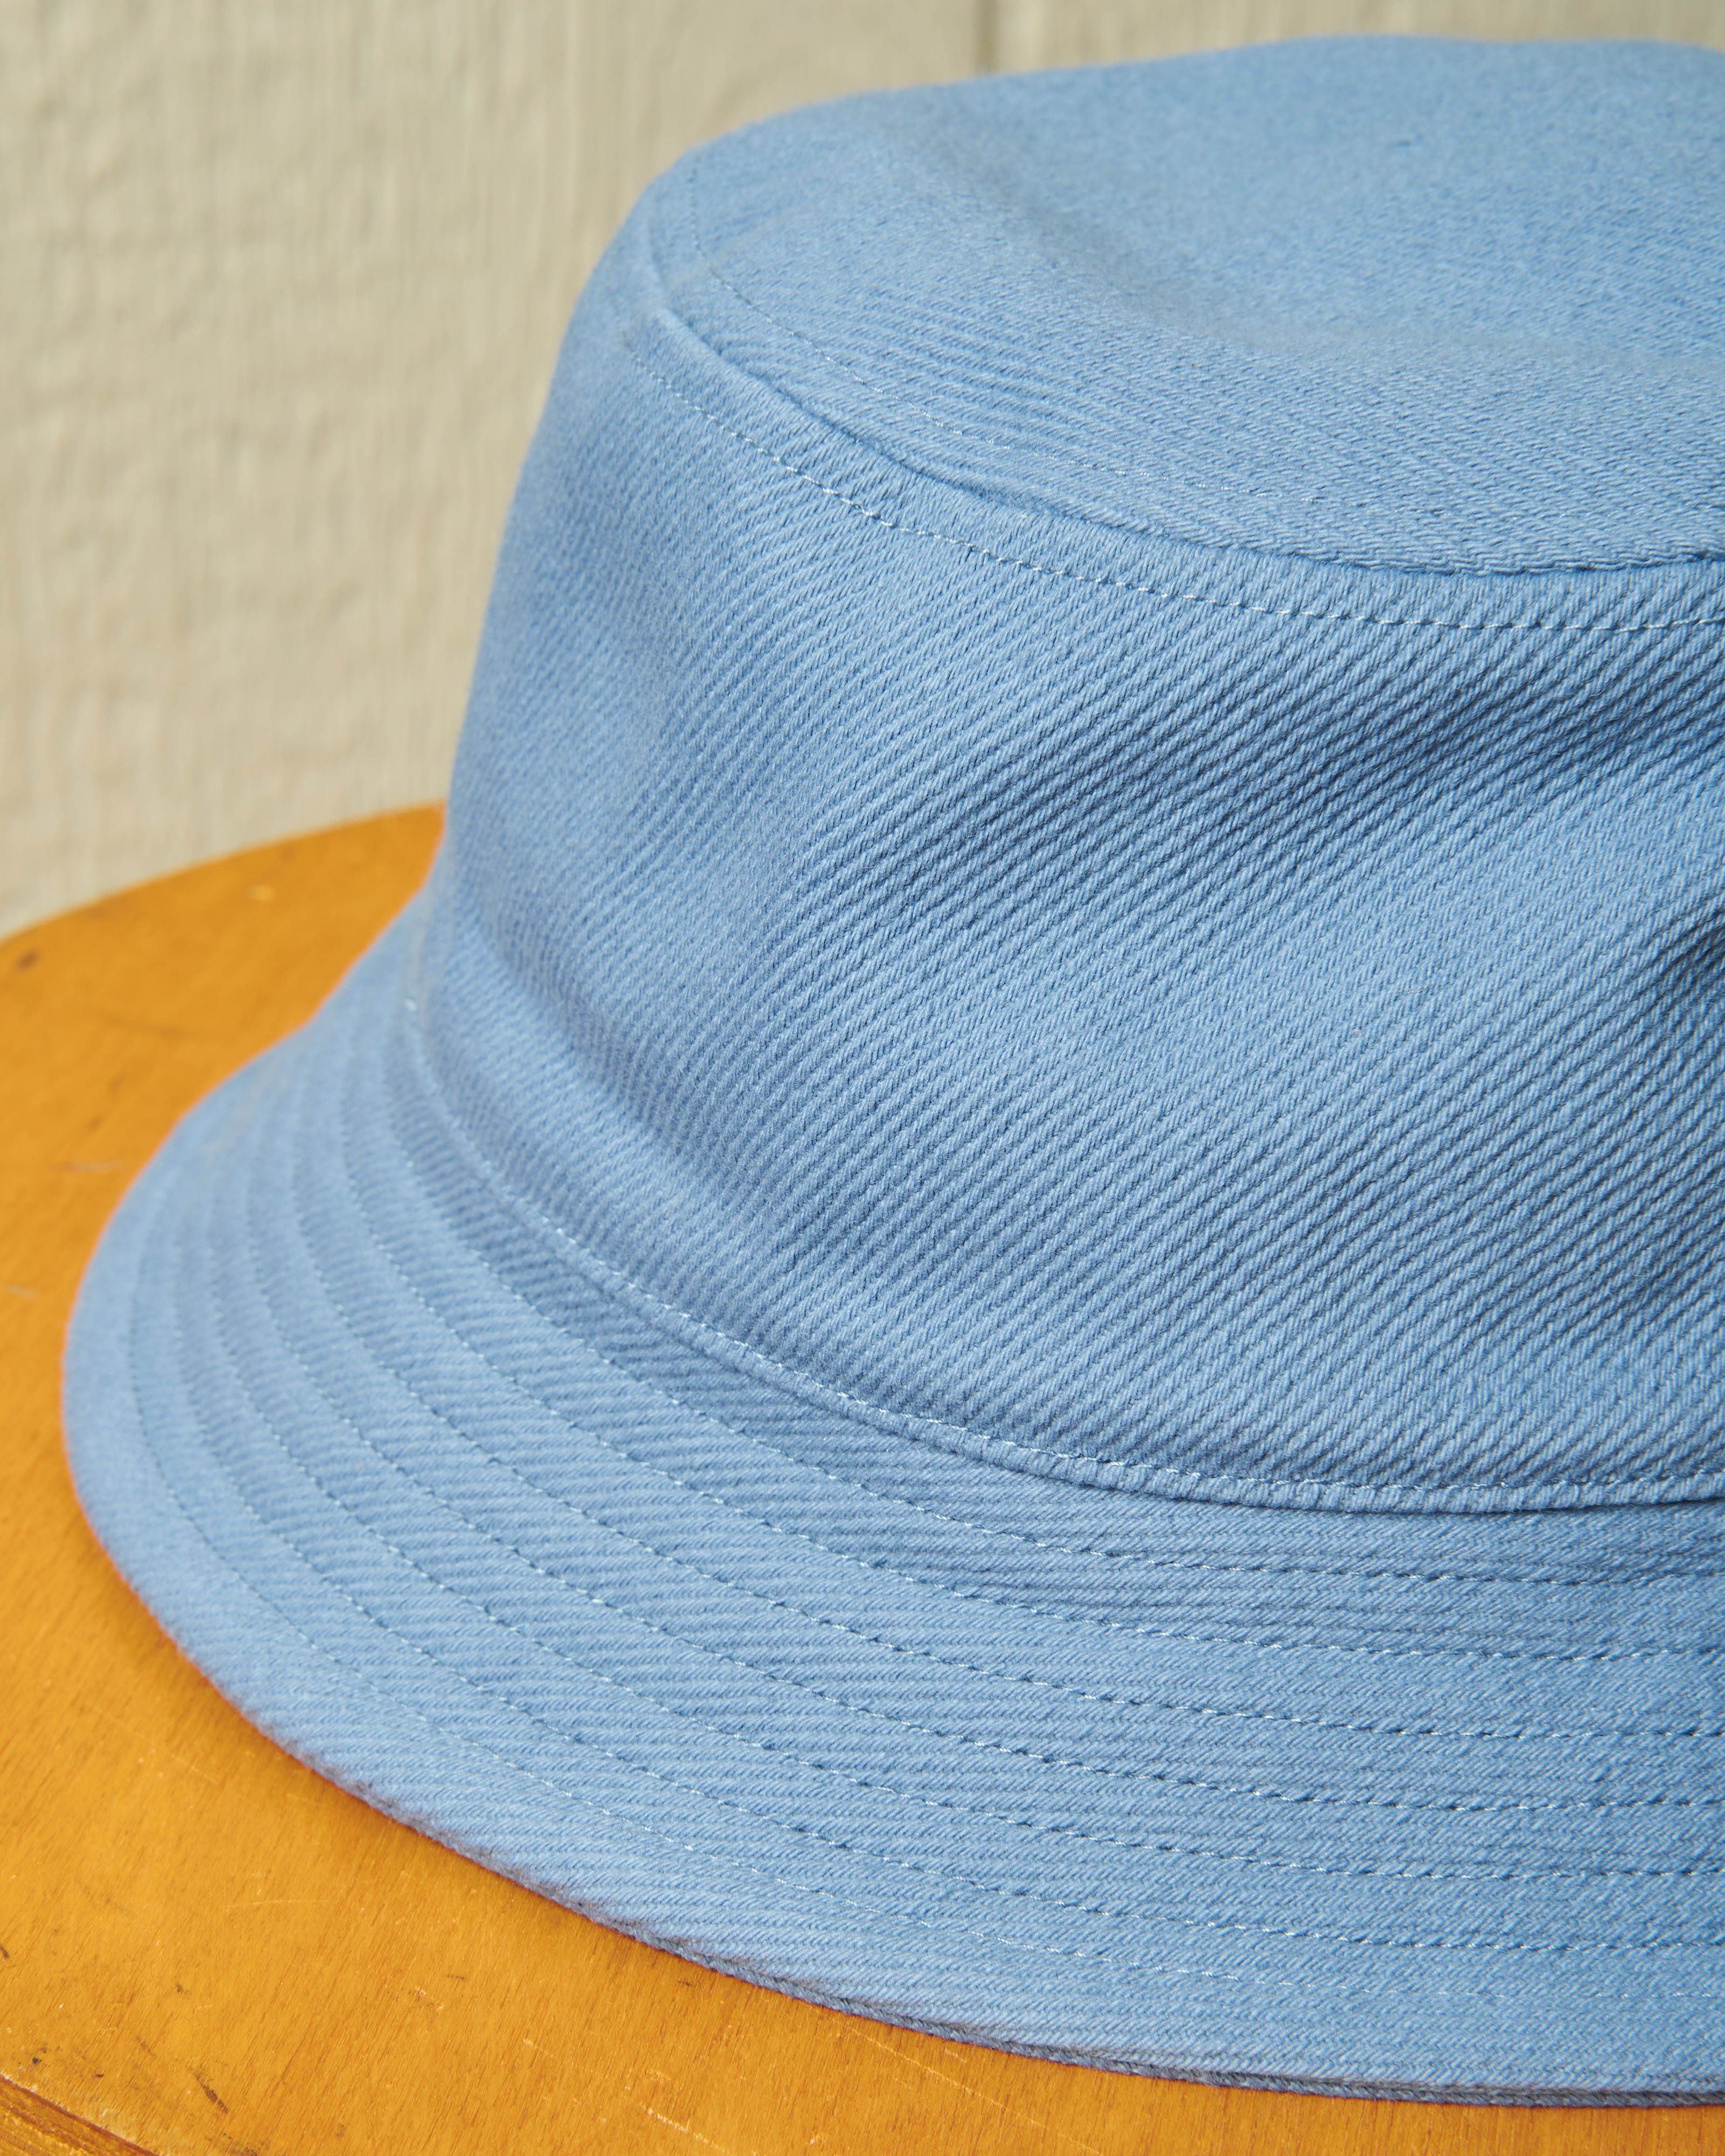 Blue Toucan Boutique — Classic White Bucket Hat